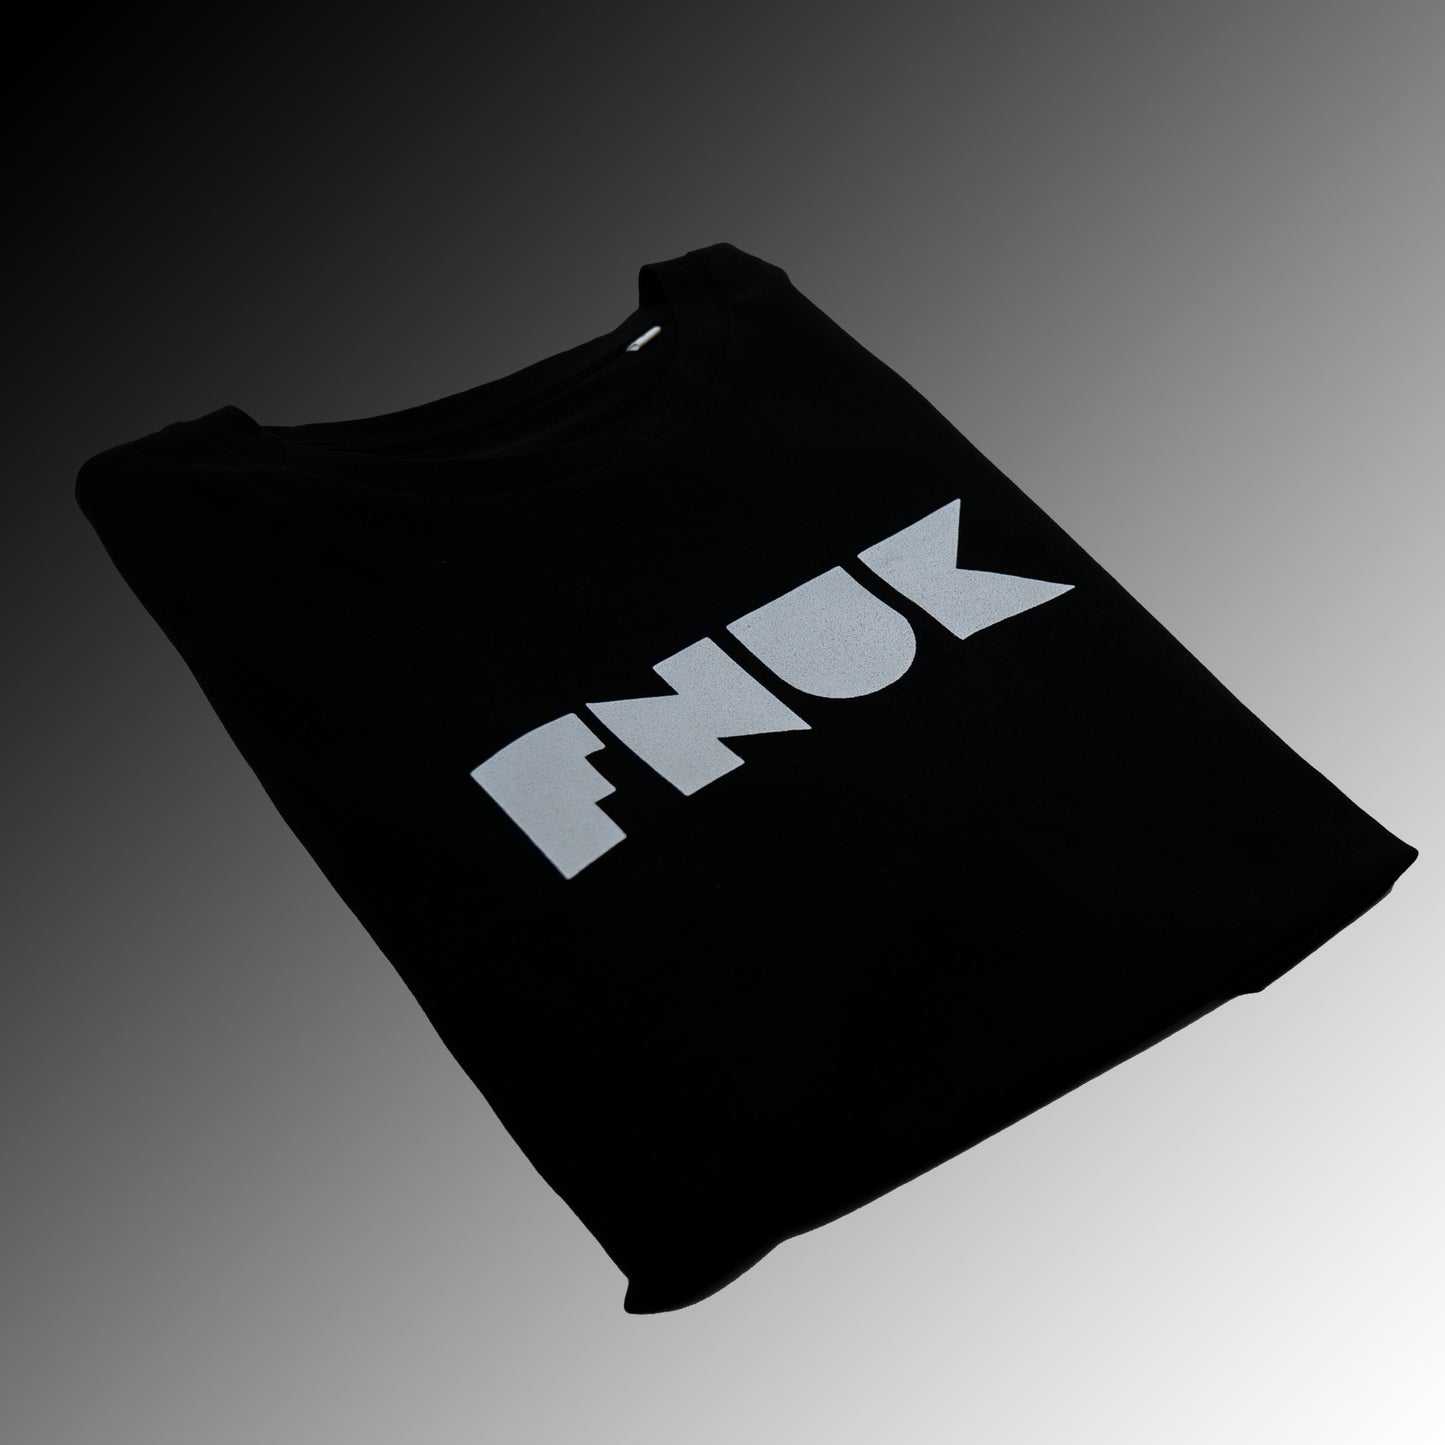 FNUK Logotyp t-shirt för kvinnor i svart och vitt 